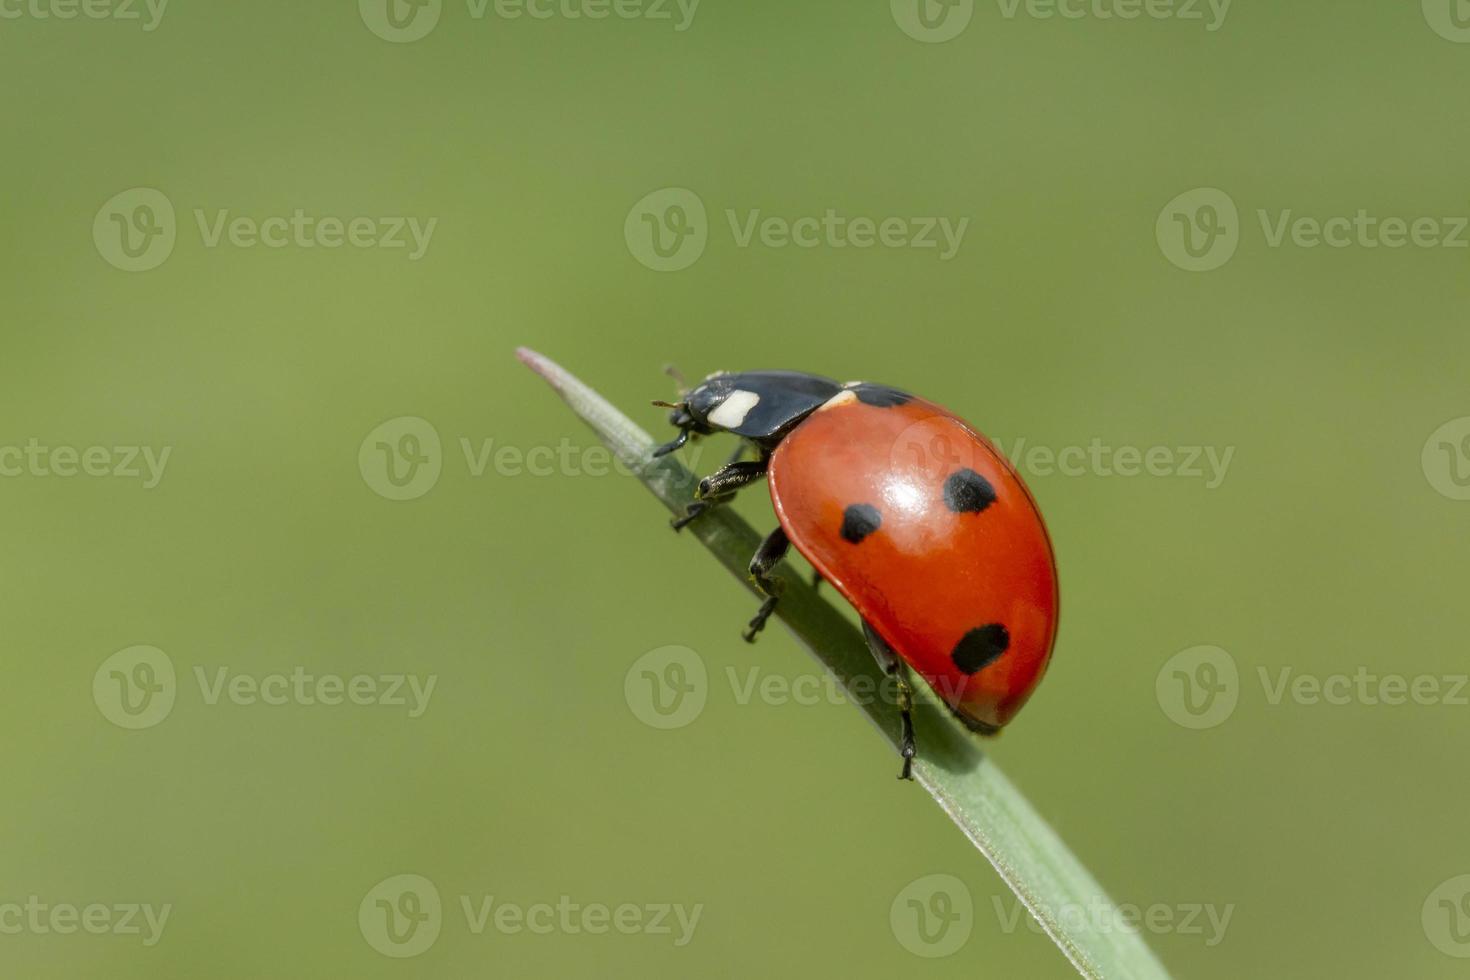 ladybug siiting on blade against green background photo